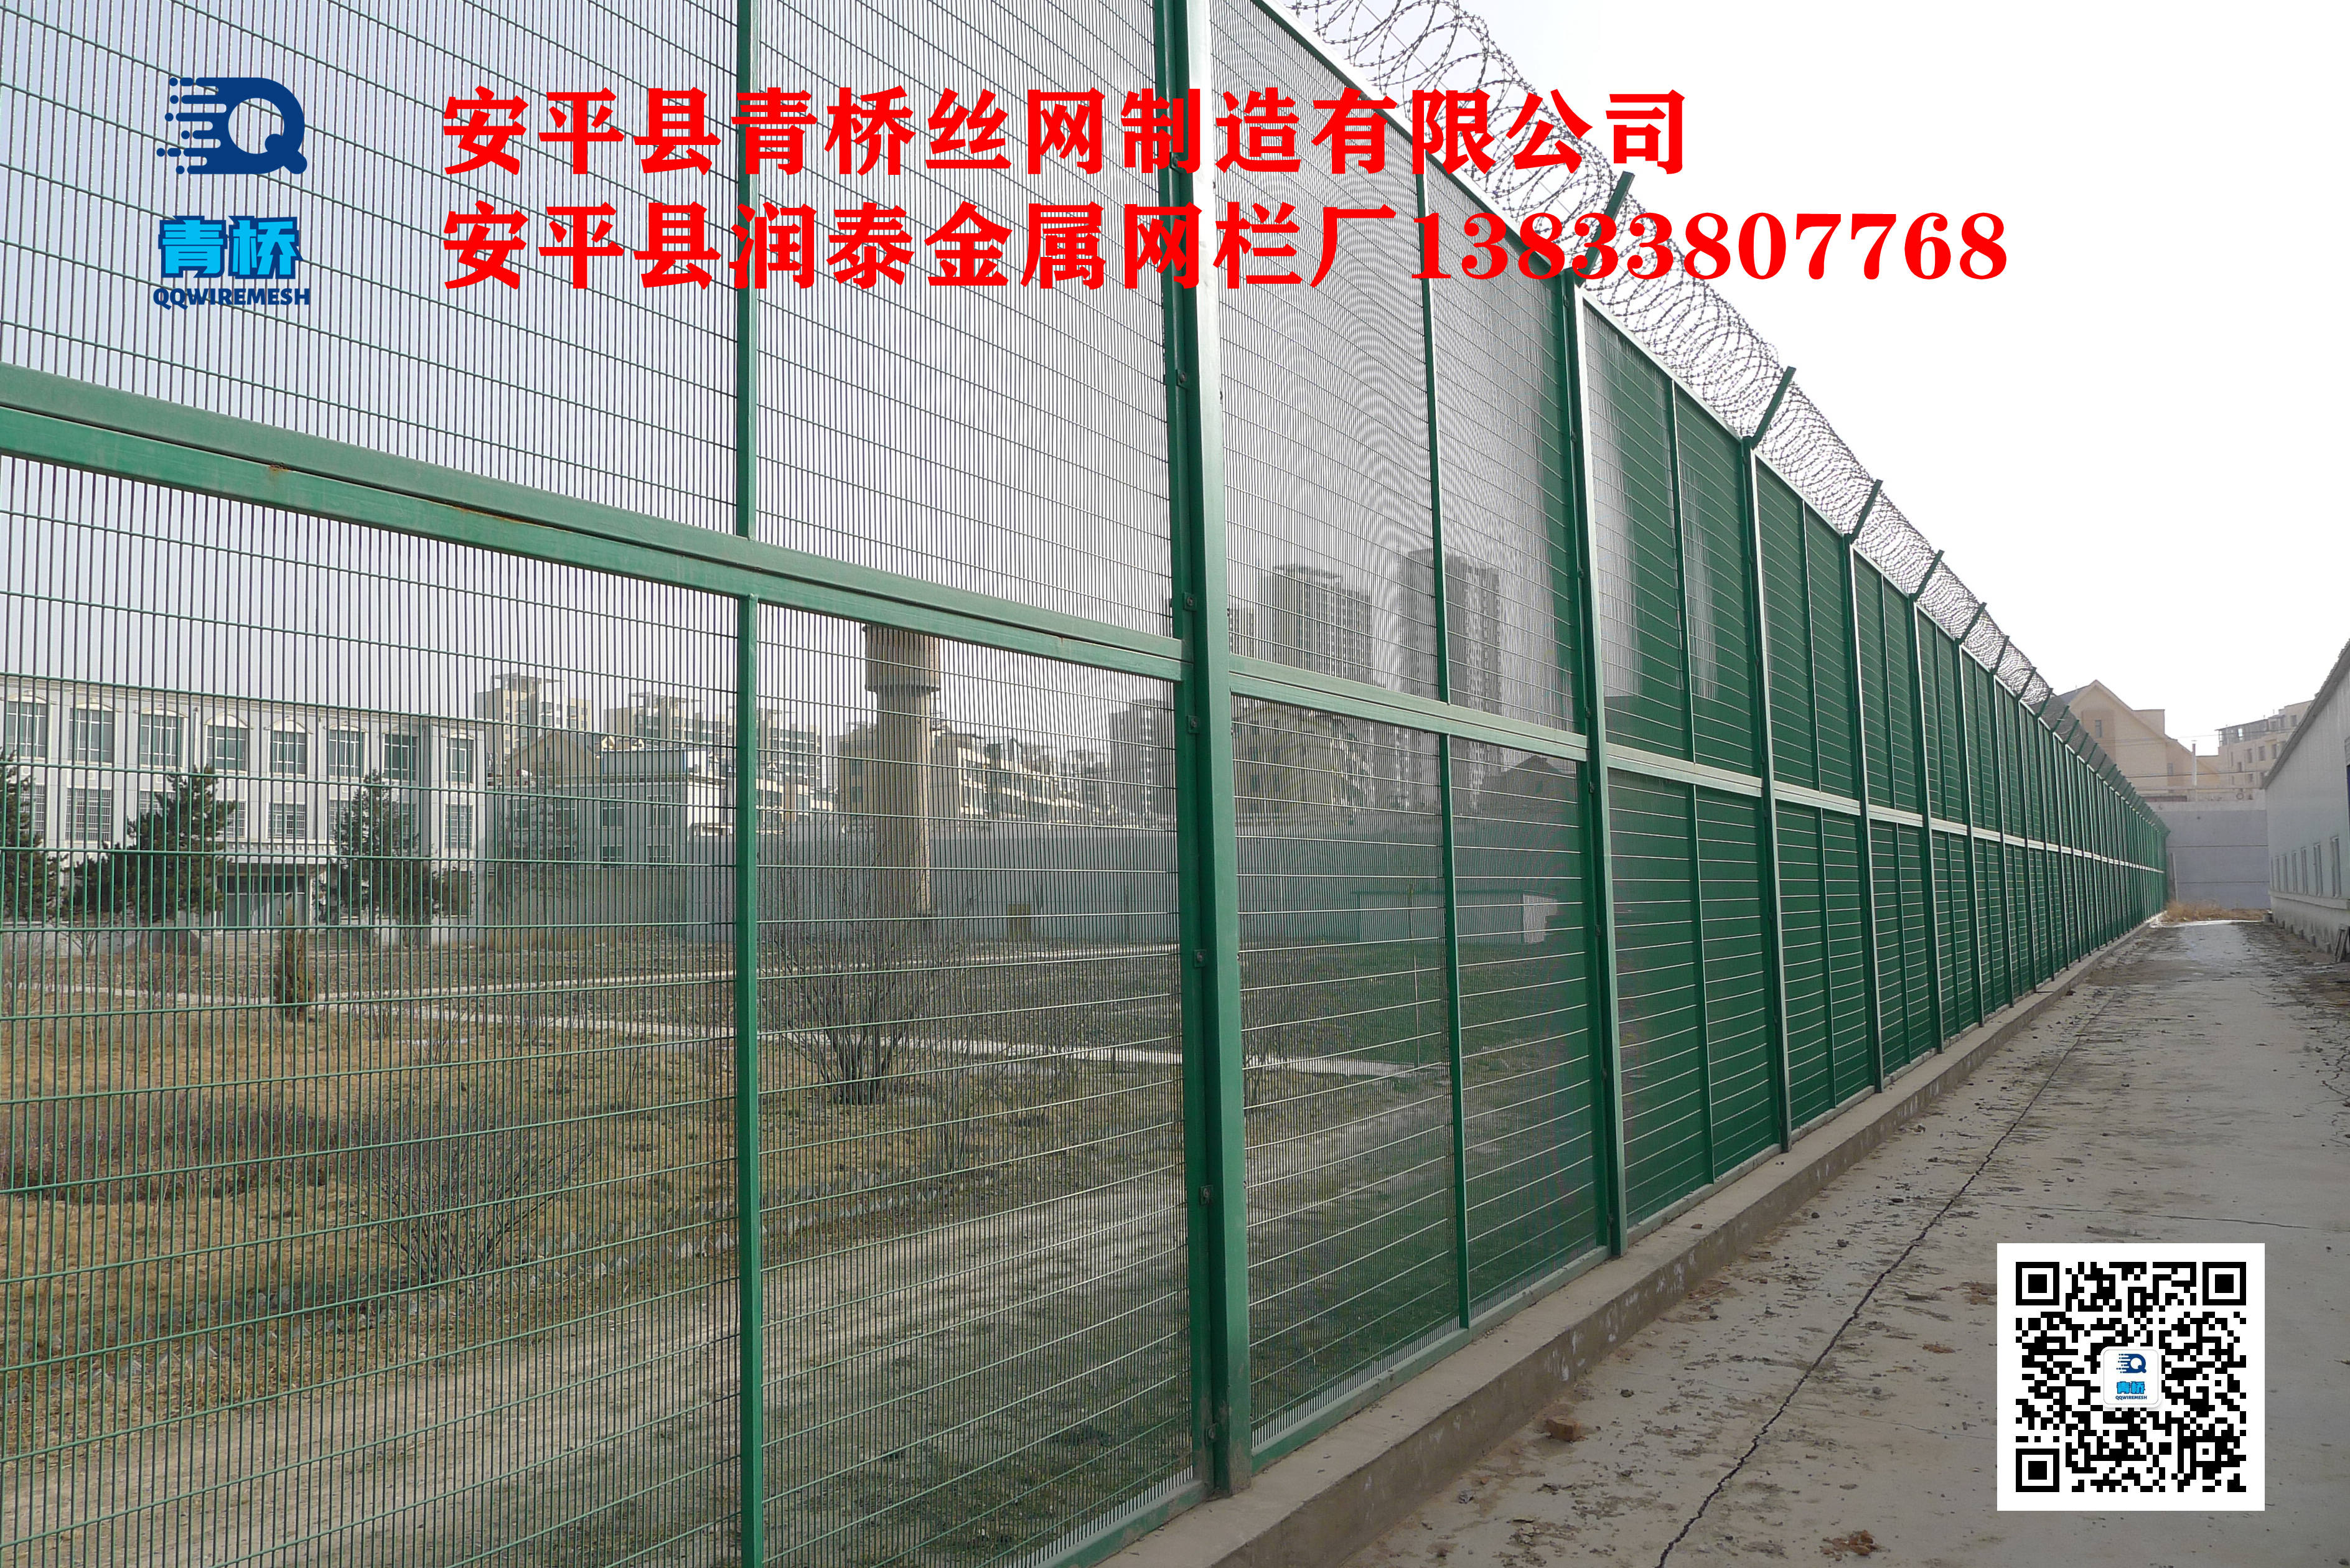 青海省多巴强制隔离戒毒所巡逻通道隔离钢网墙13833807768